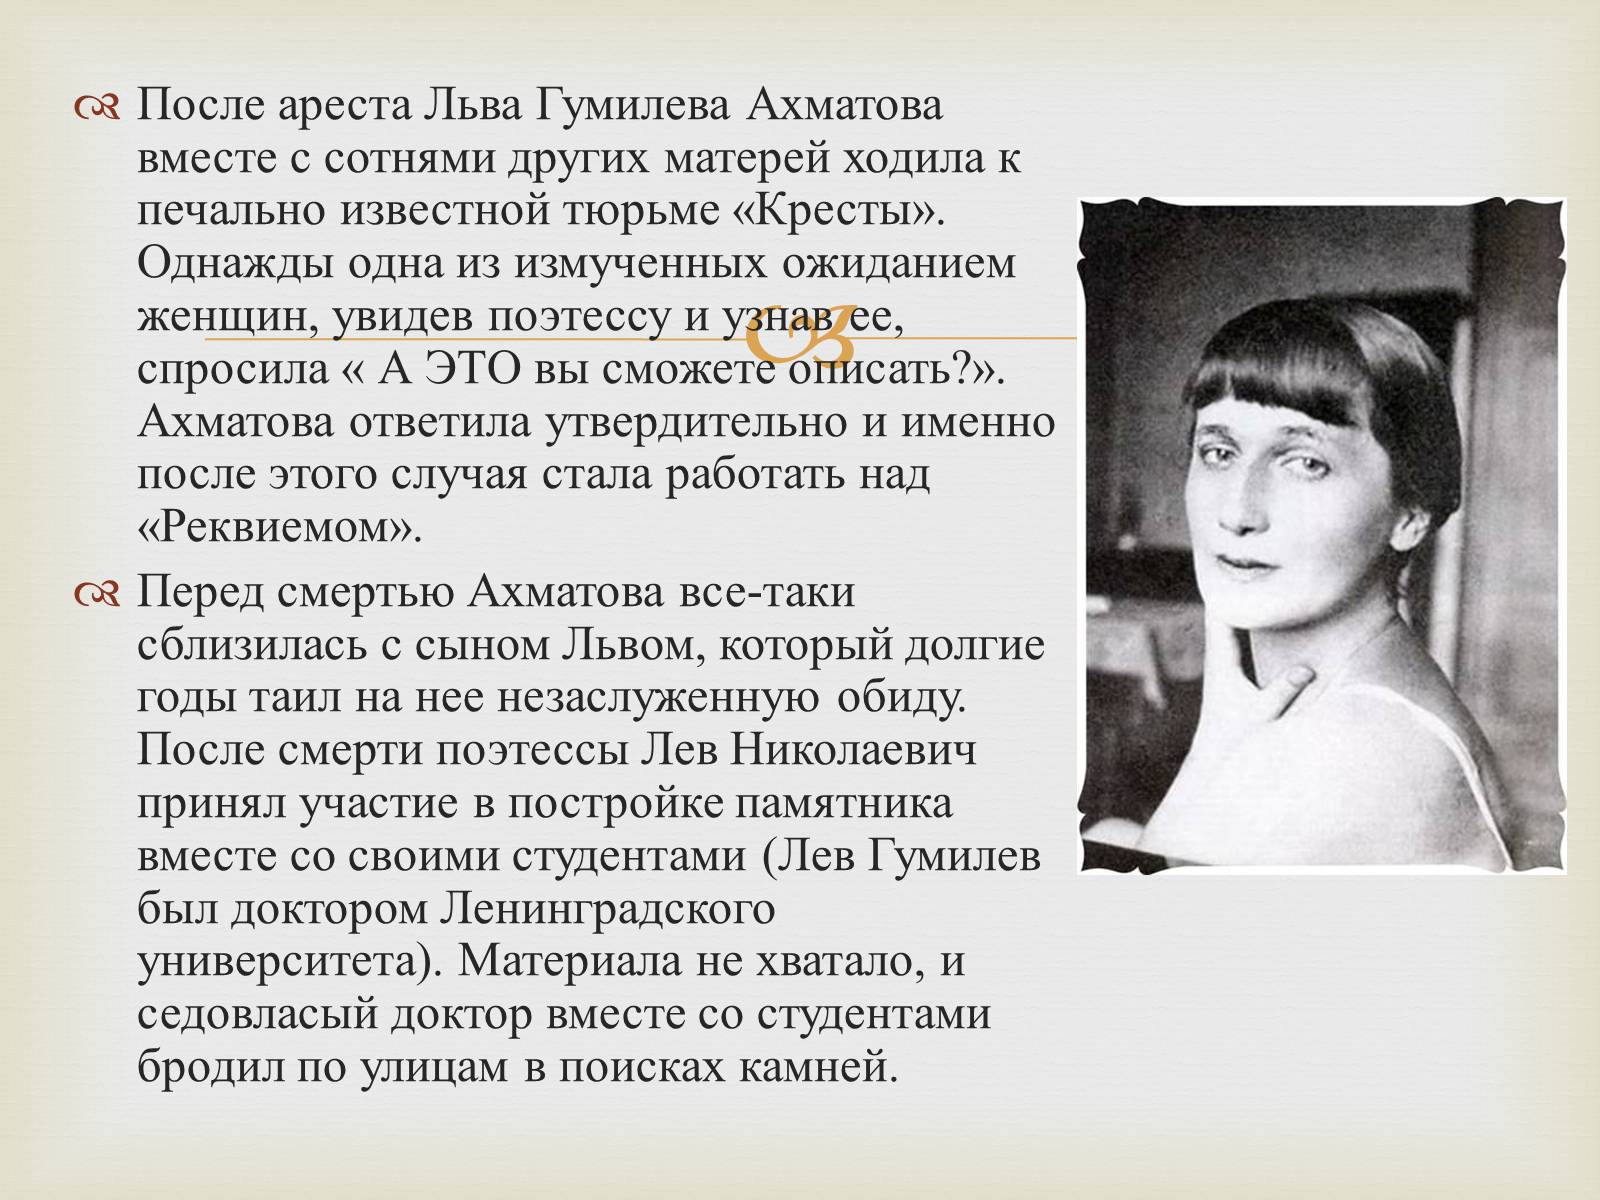 Ахматова судьба и стихи. Ахматова поэтесса. Ахматова и Гумилев. Личная жизнь Ахматовой кратко.